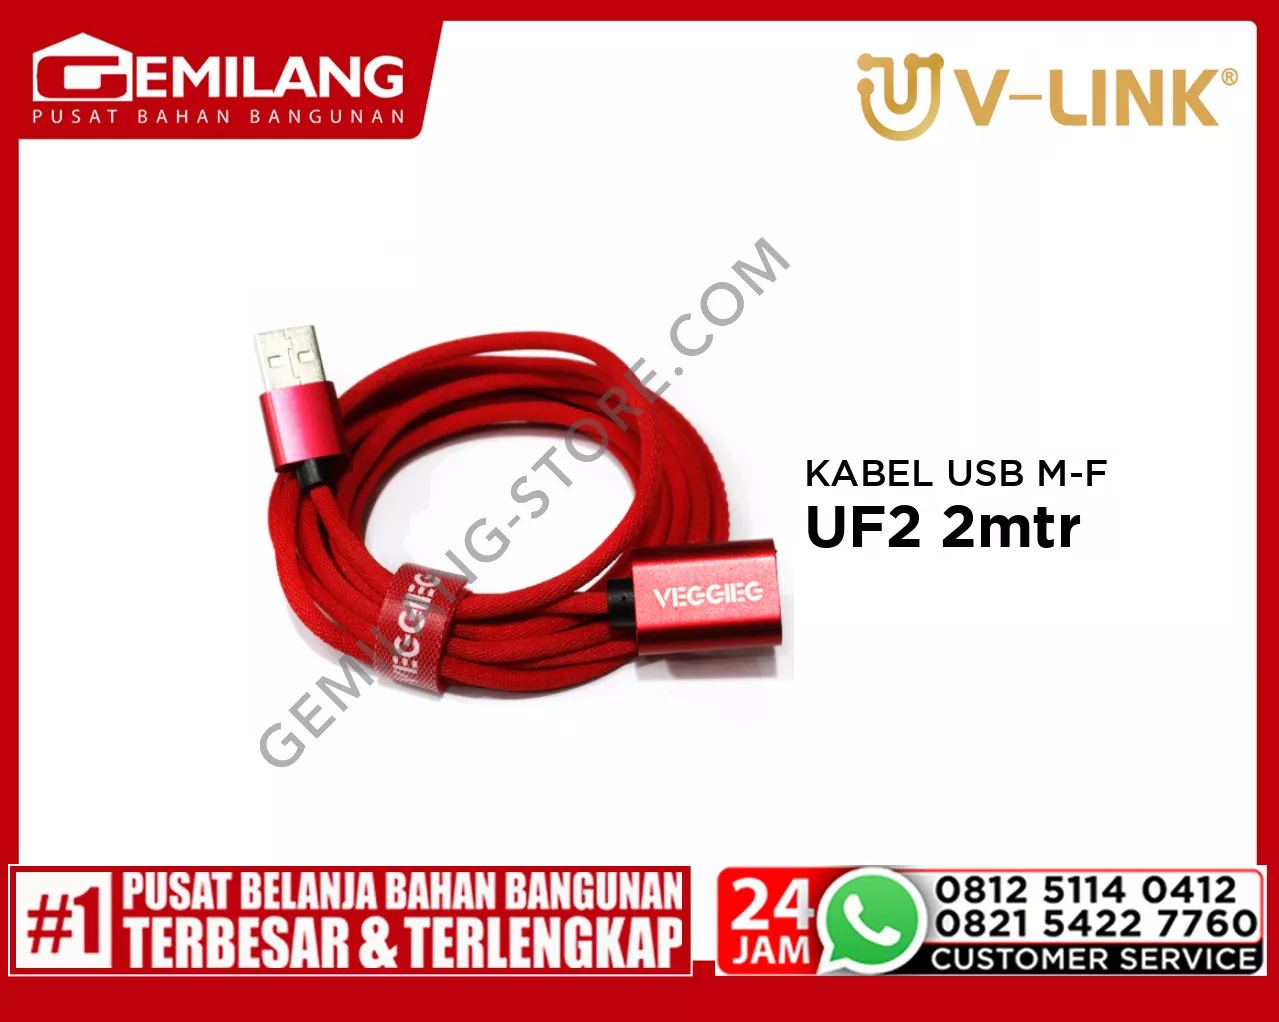 V-LINK KABEL USB MALE TO FEMALE VEGGIEG UF2 2mtr